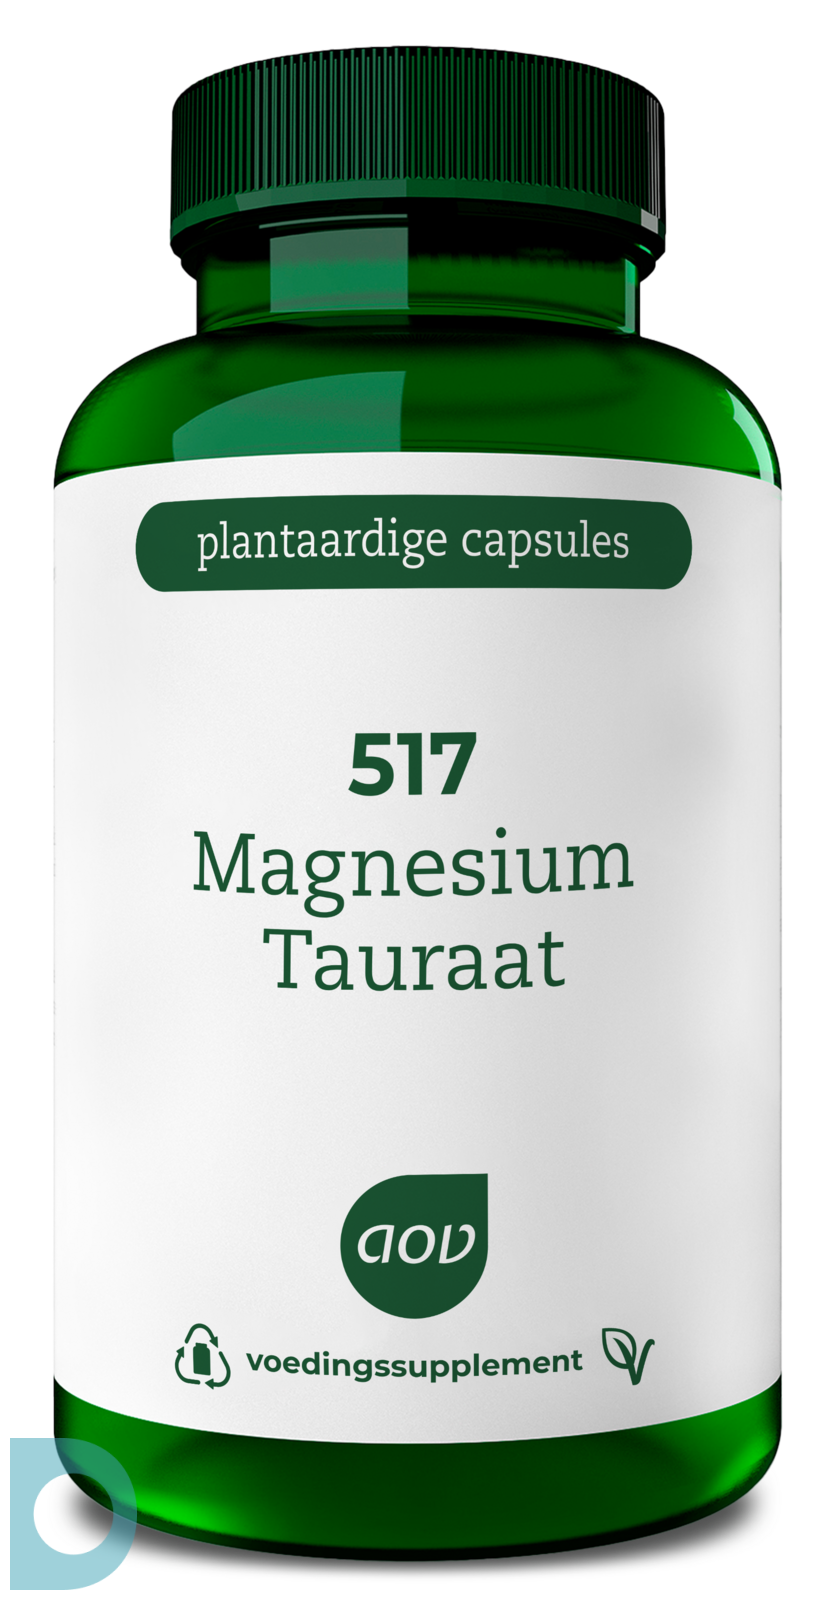 AOV Magnesium Tauraat 517 kopen De Online Drogist